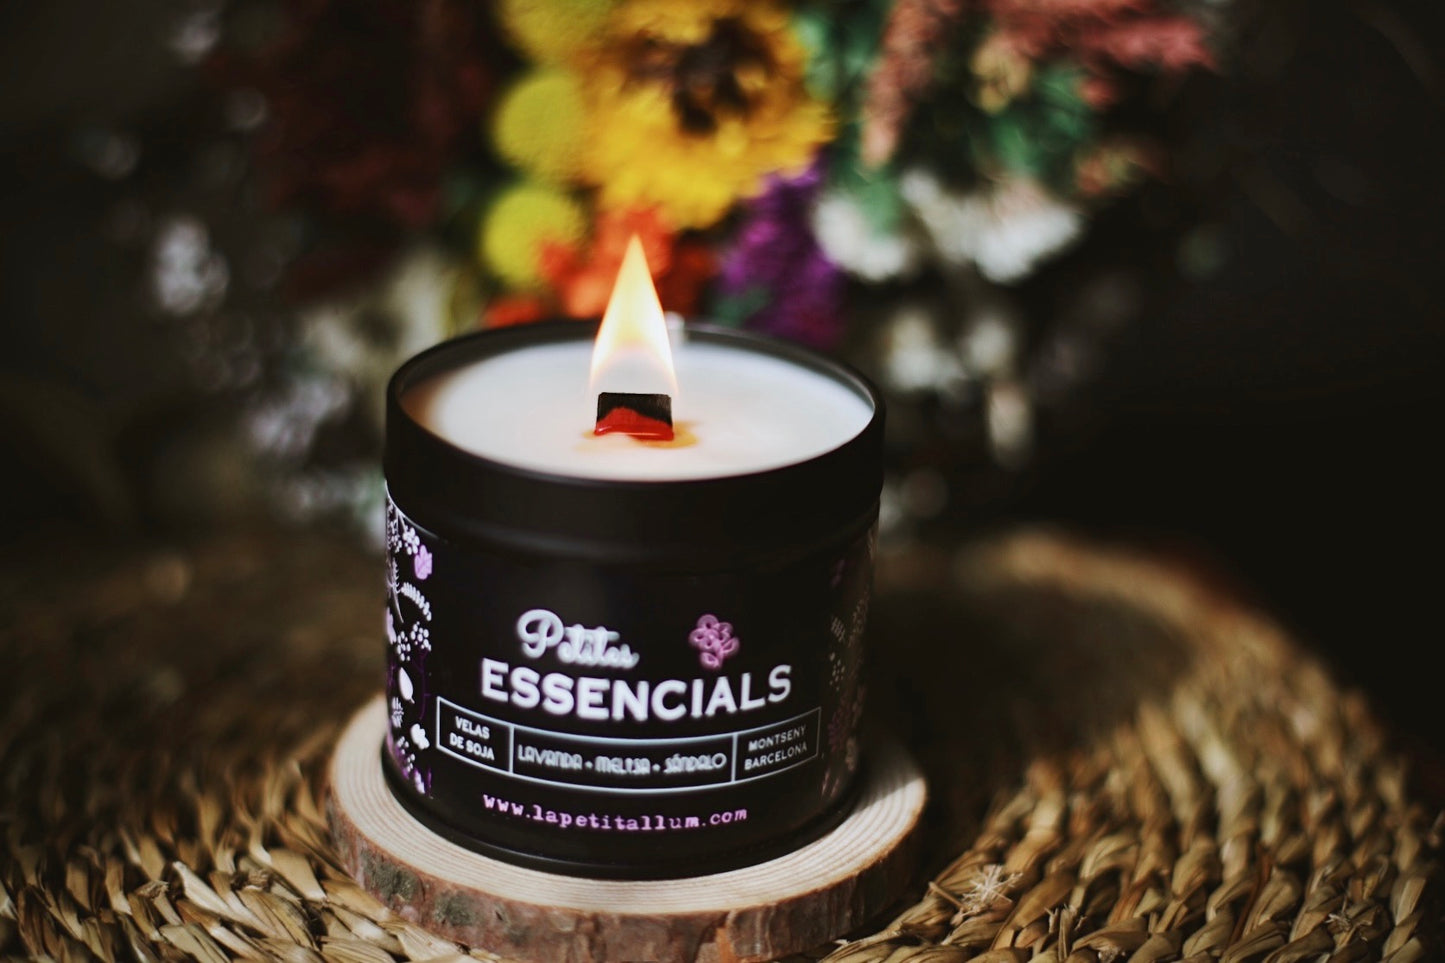 ❥ Petites Essencials, base lavande 🌱 (aromathérapie)